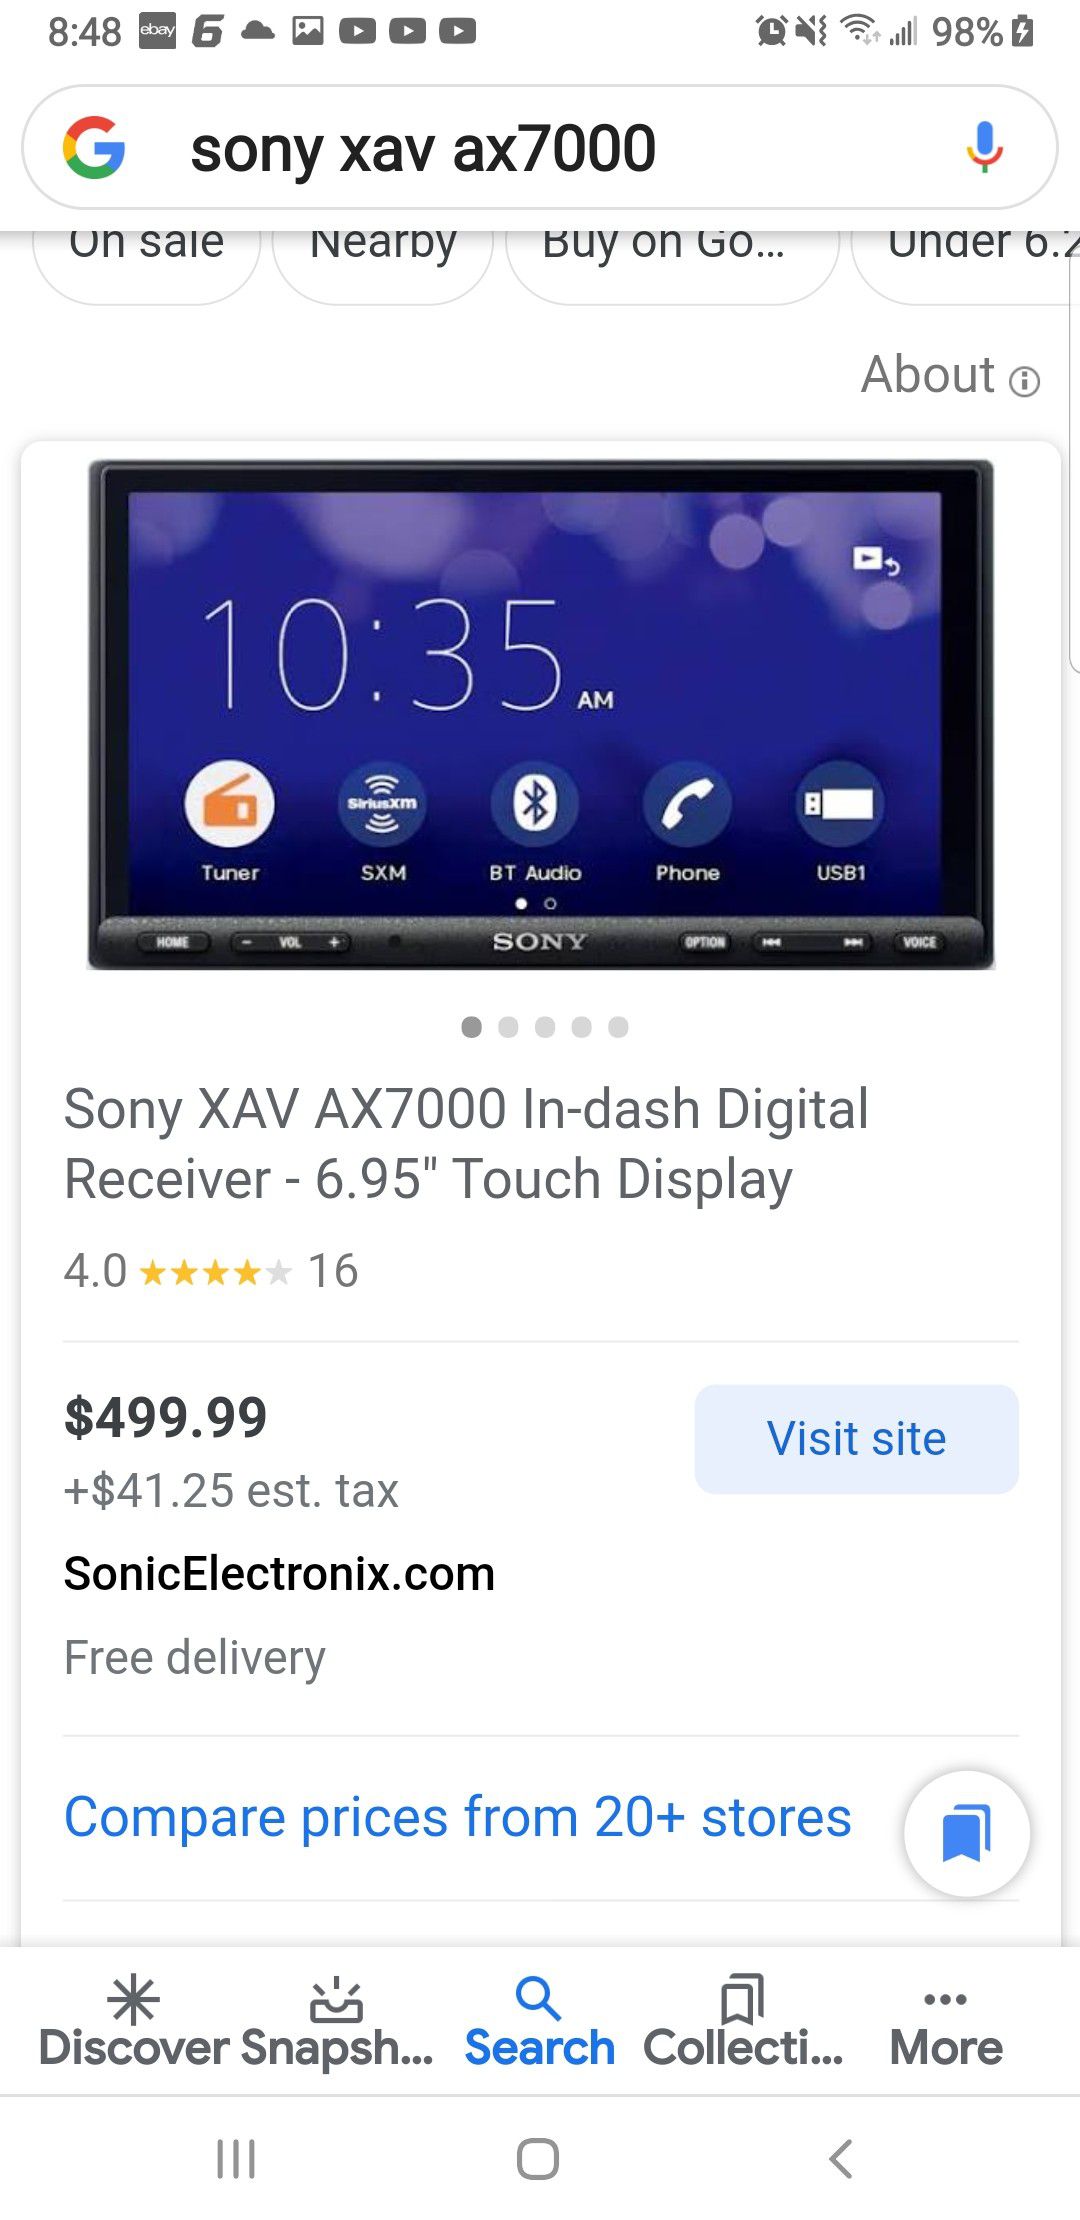 Sony XAV AX7000 In-dash Digital Receiver - 6.95" Touch Display